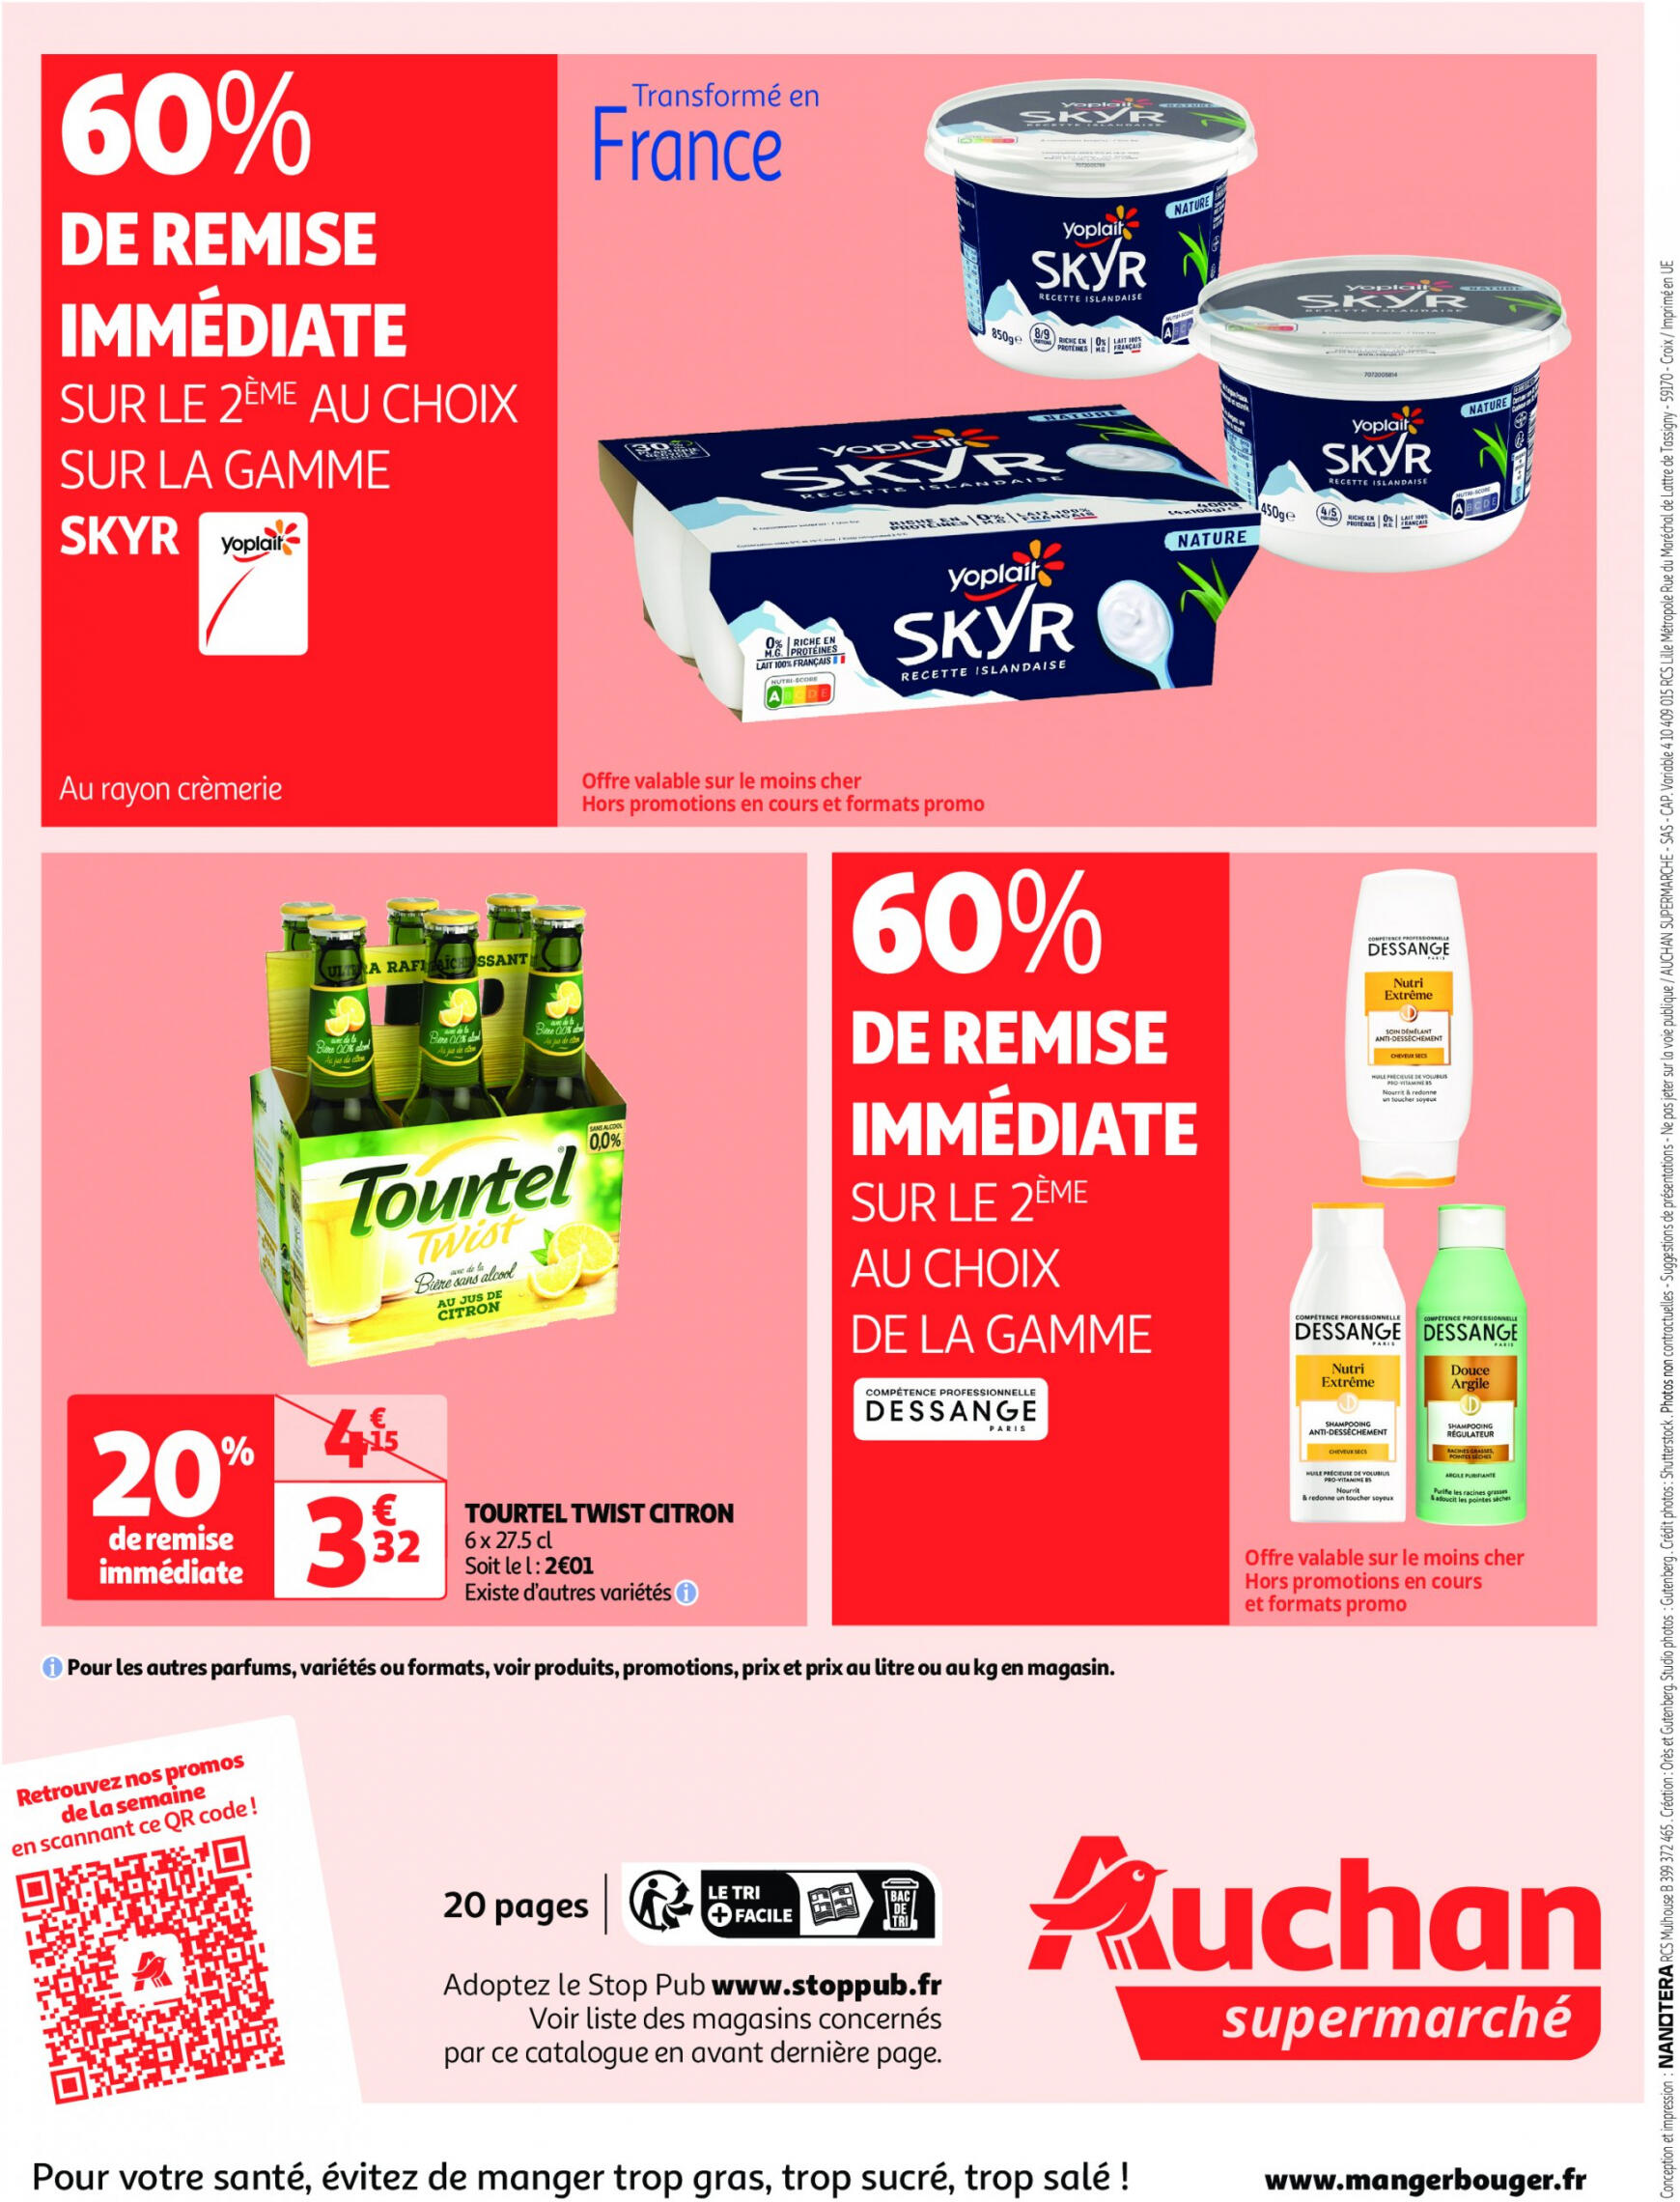 auchan - Auchan - On met le turbot sur les produits de la mer folder huidig 14.05. - 19.05. - page: 20